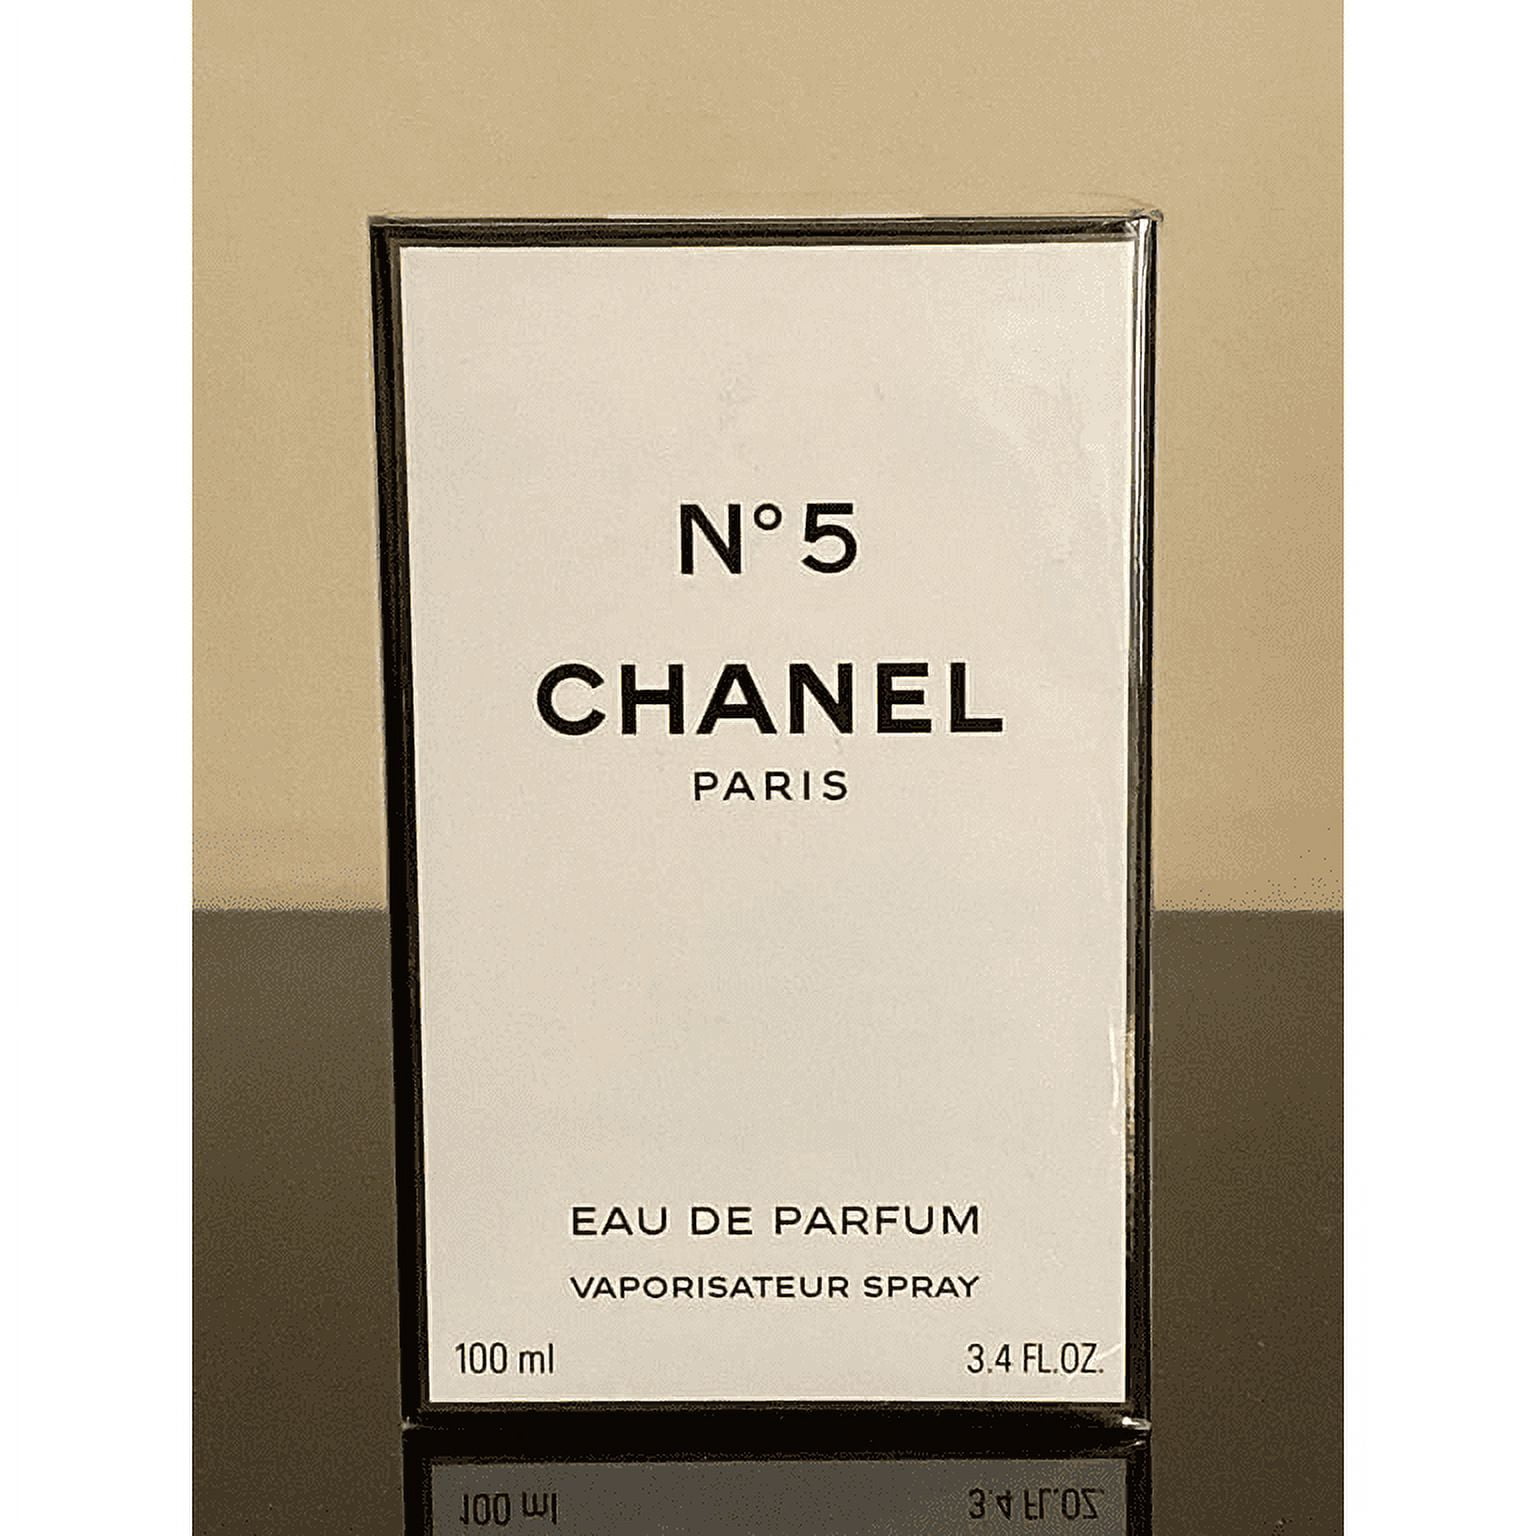 Ch-anel_ No. 5 Eau de Parfum Spray, Perfume for Women, 3.4 oz / 100 ml